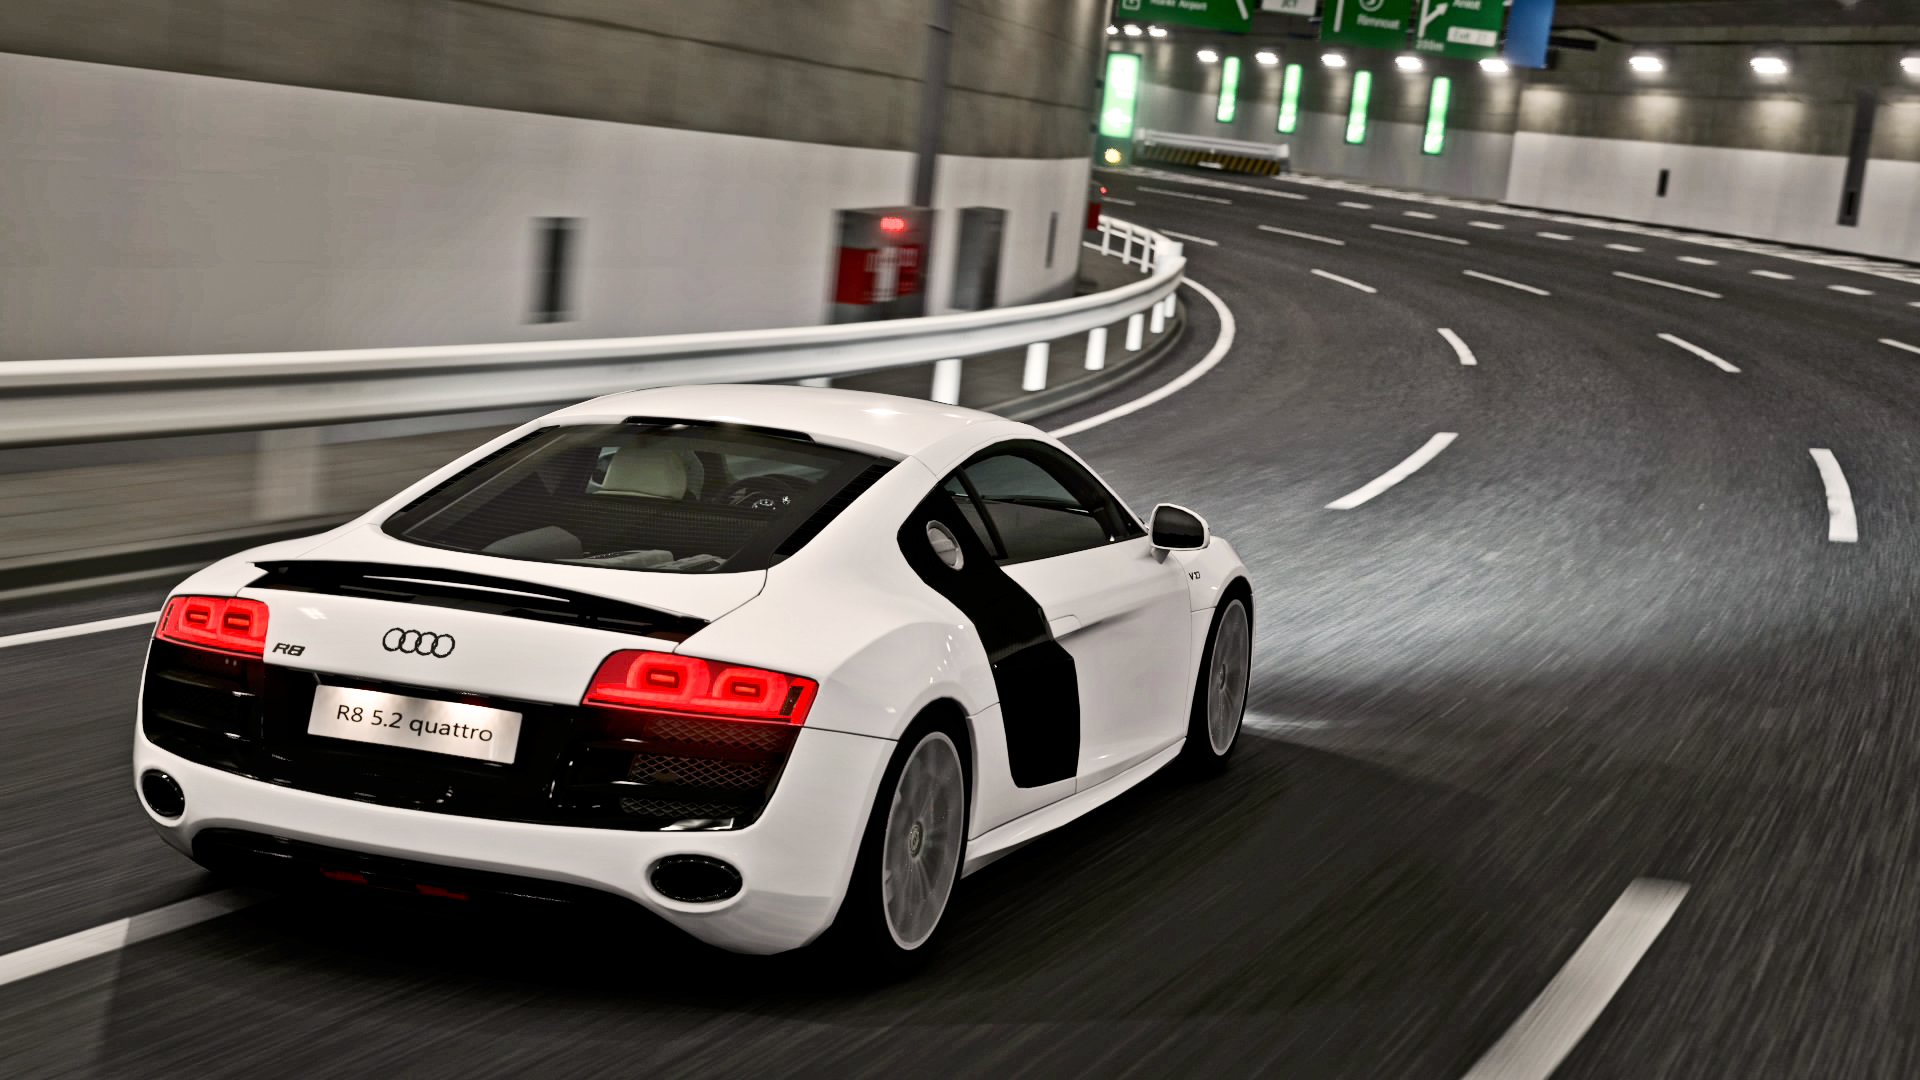 Audi R8 Hd Wallpapers 1080P wallpaper   595094